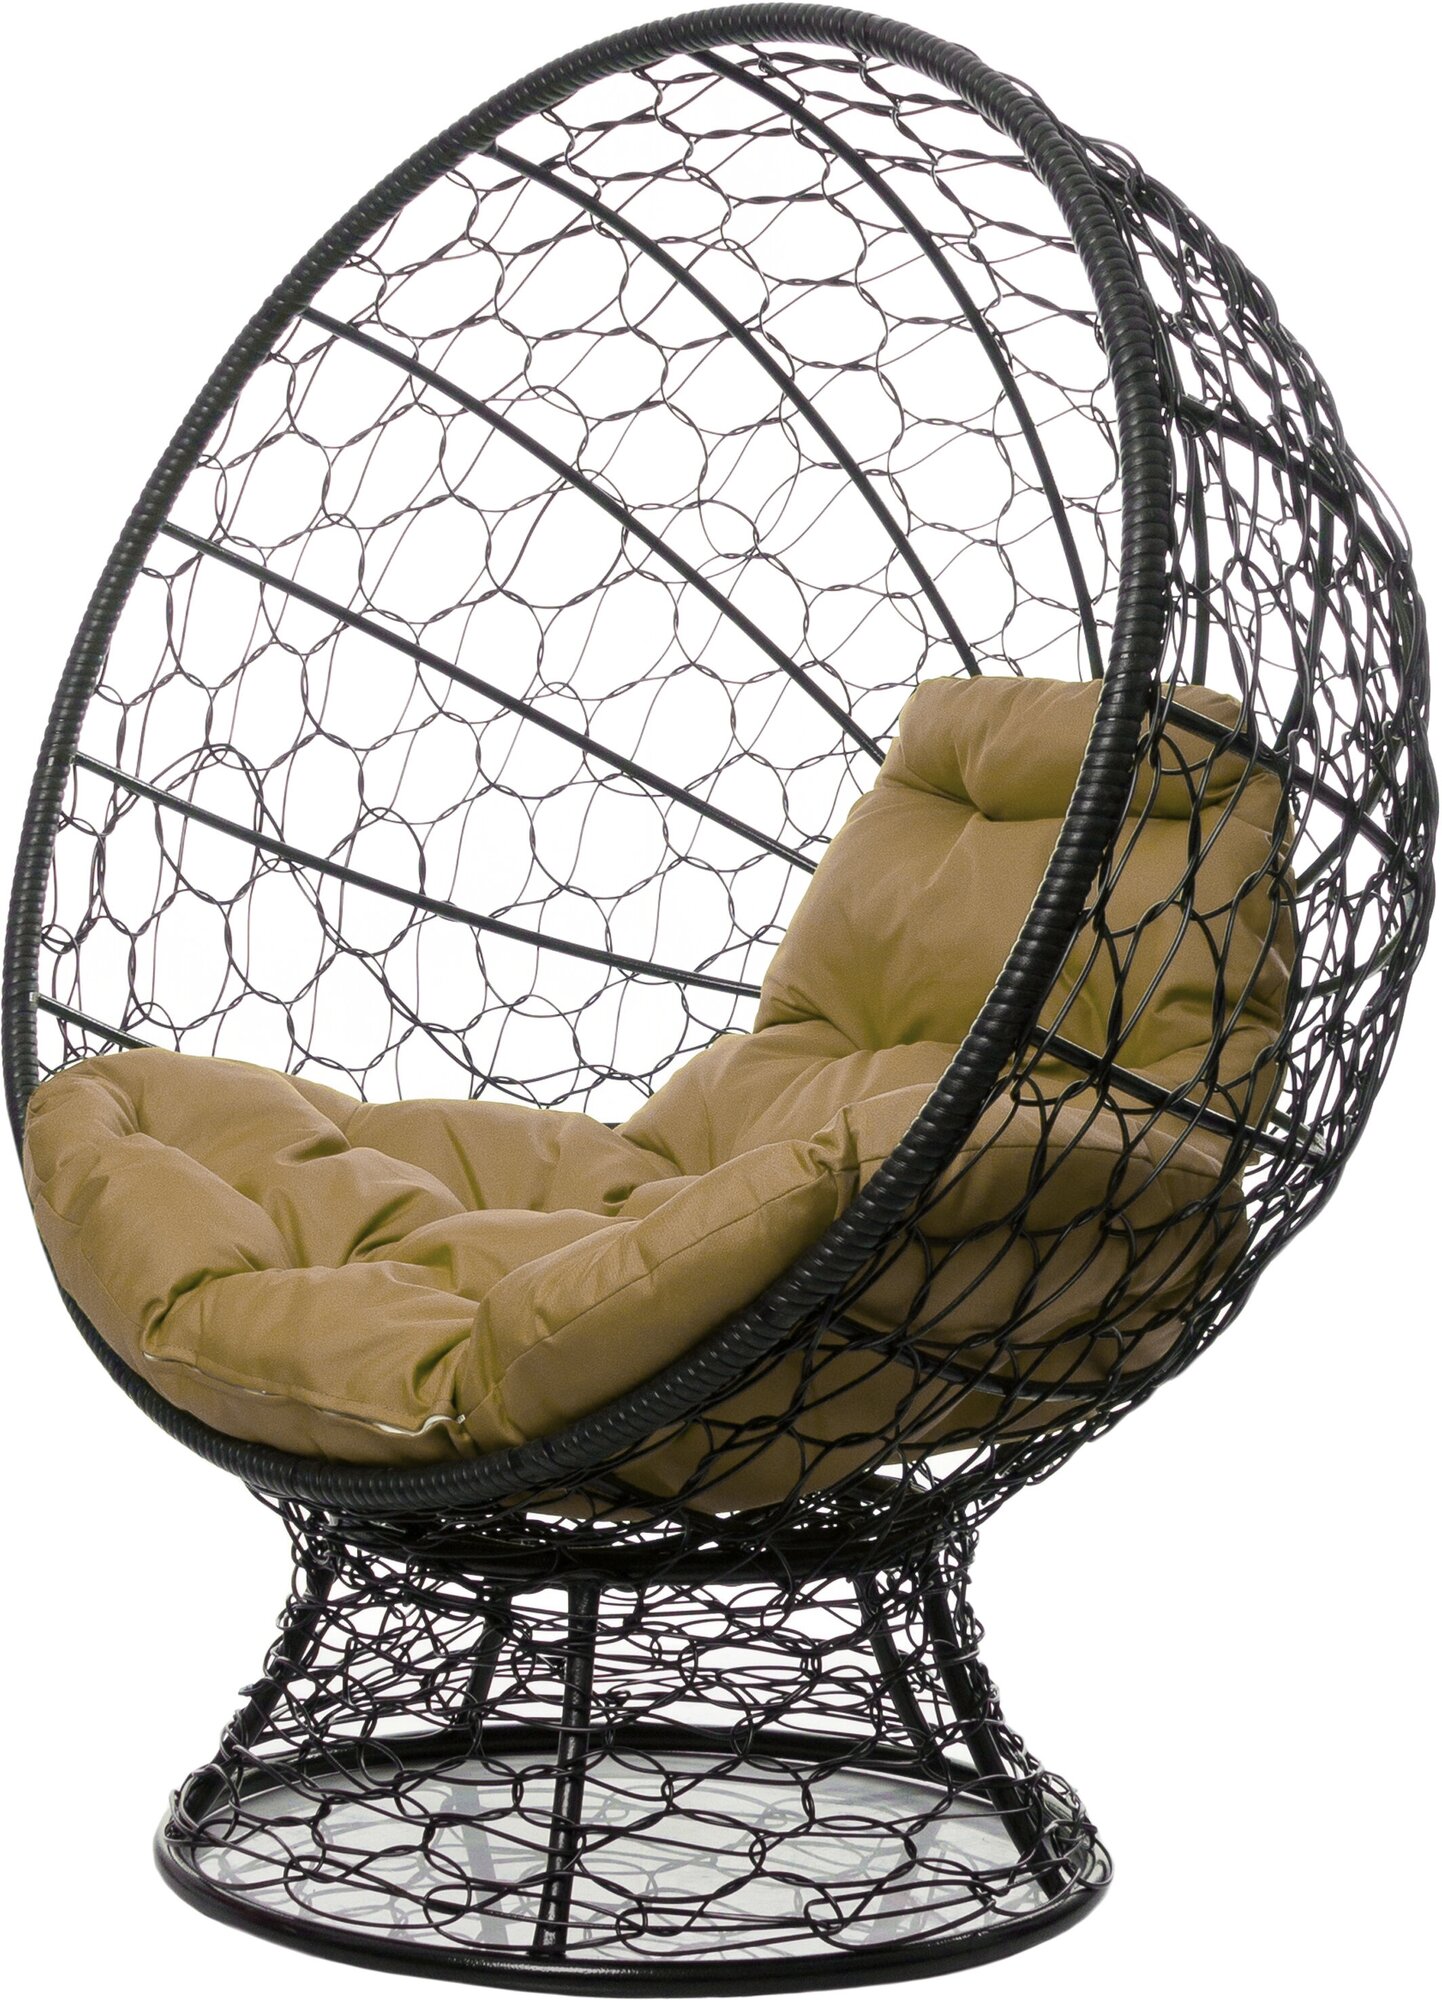 Кресло садовое M-Group Кокос на подставке ротанг чёрное 11590401 бежевая подушка